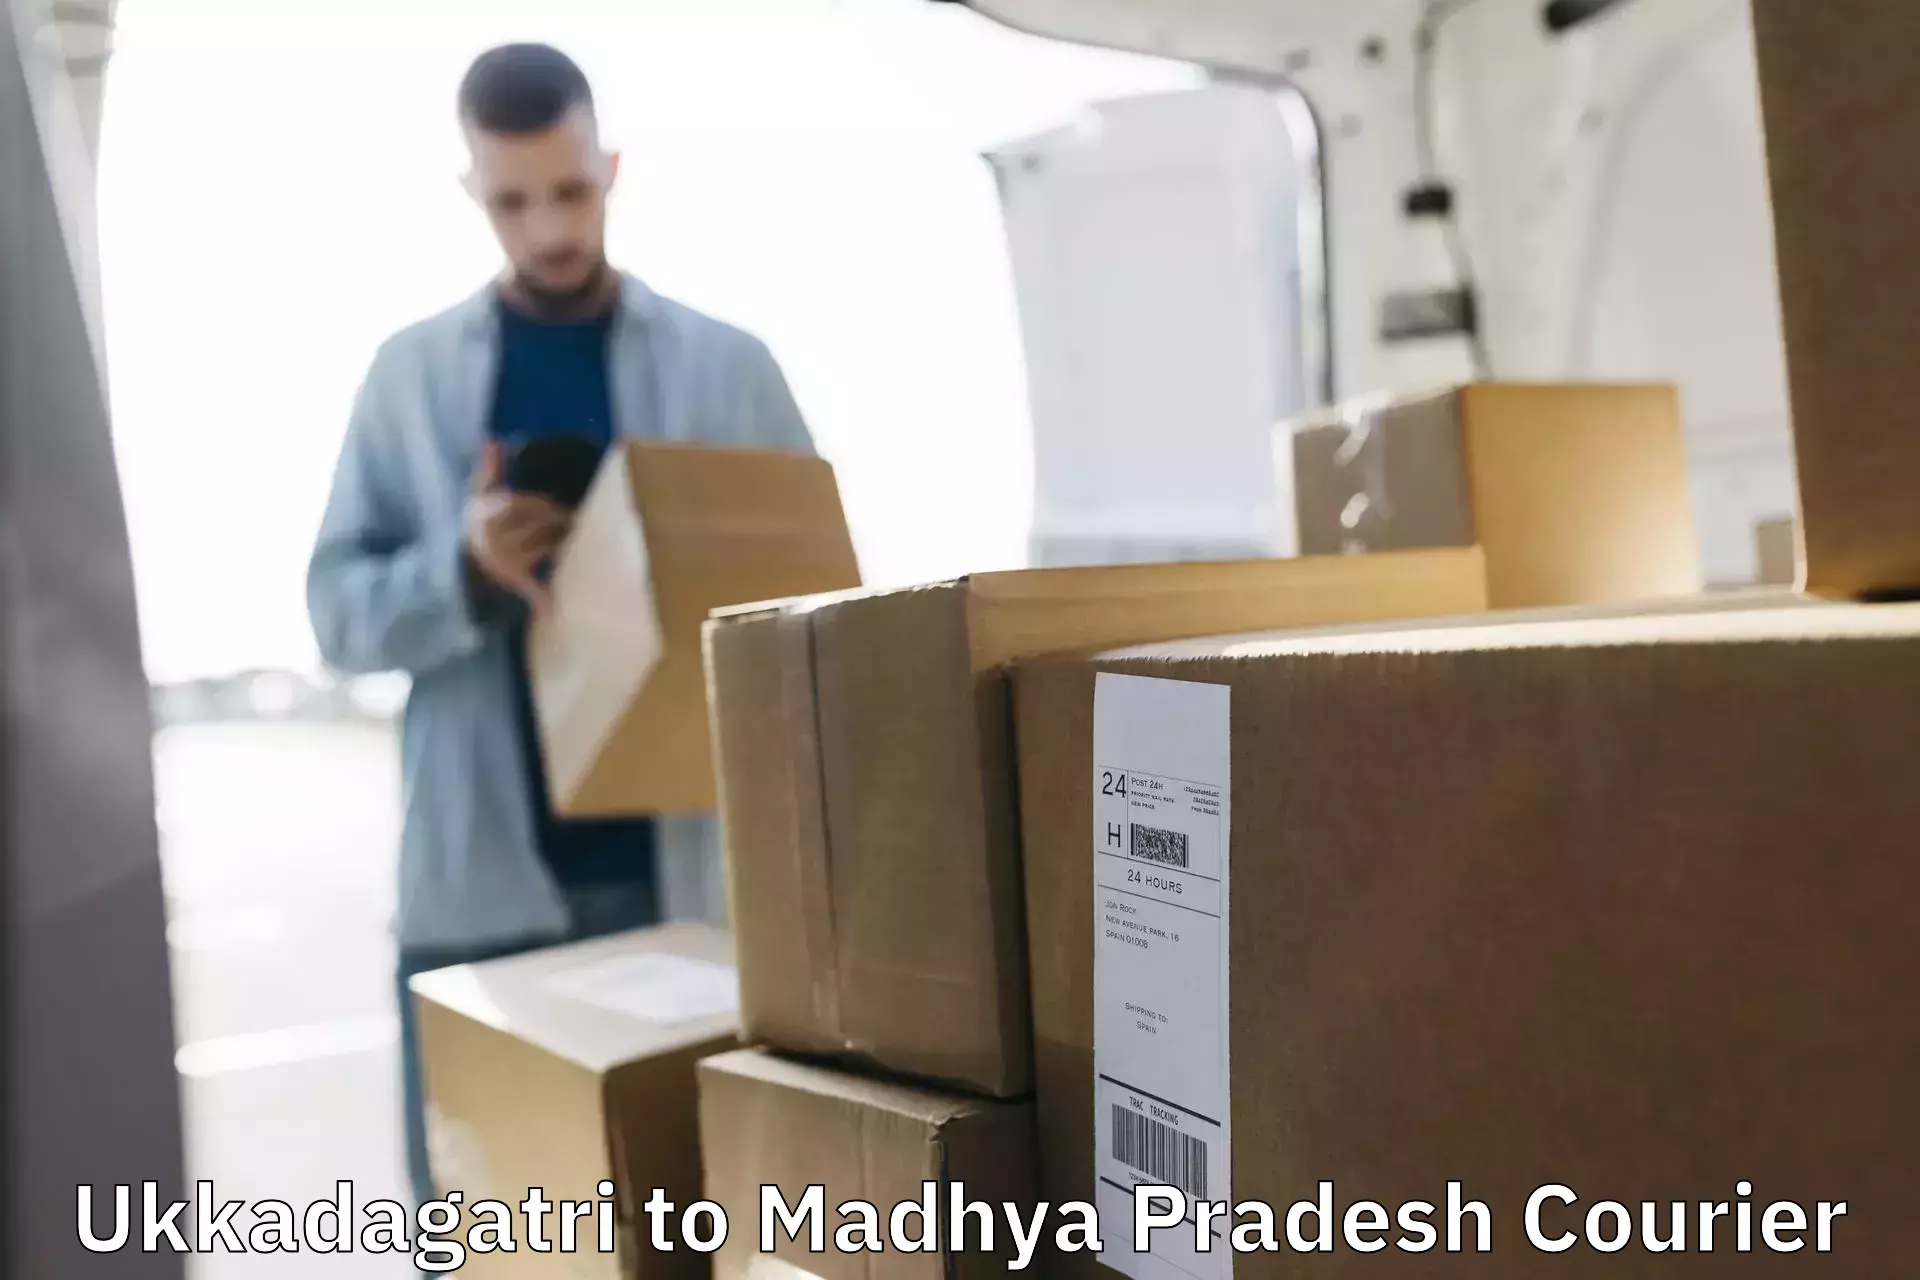 Custom courier strategies Ukkadagatri to Chhindwara